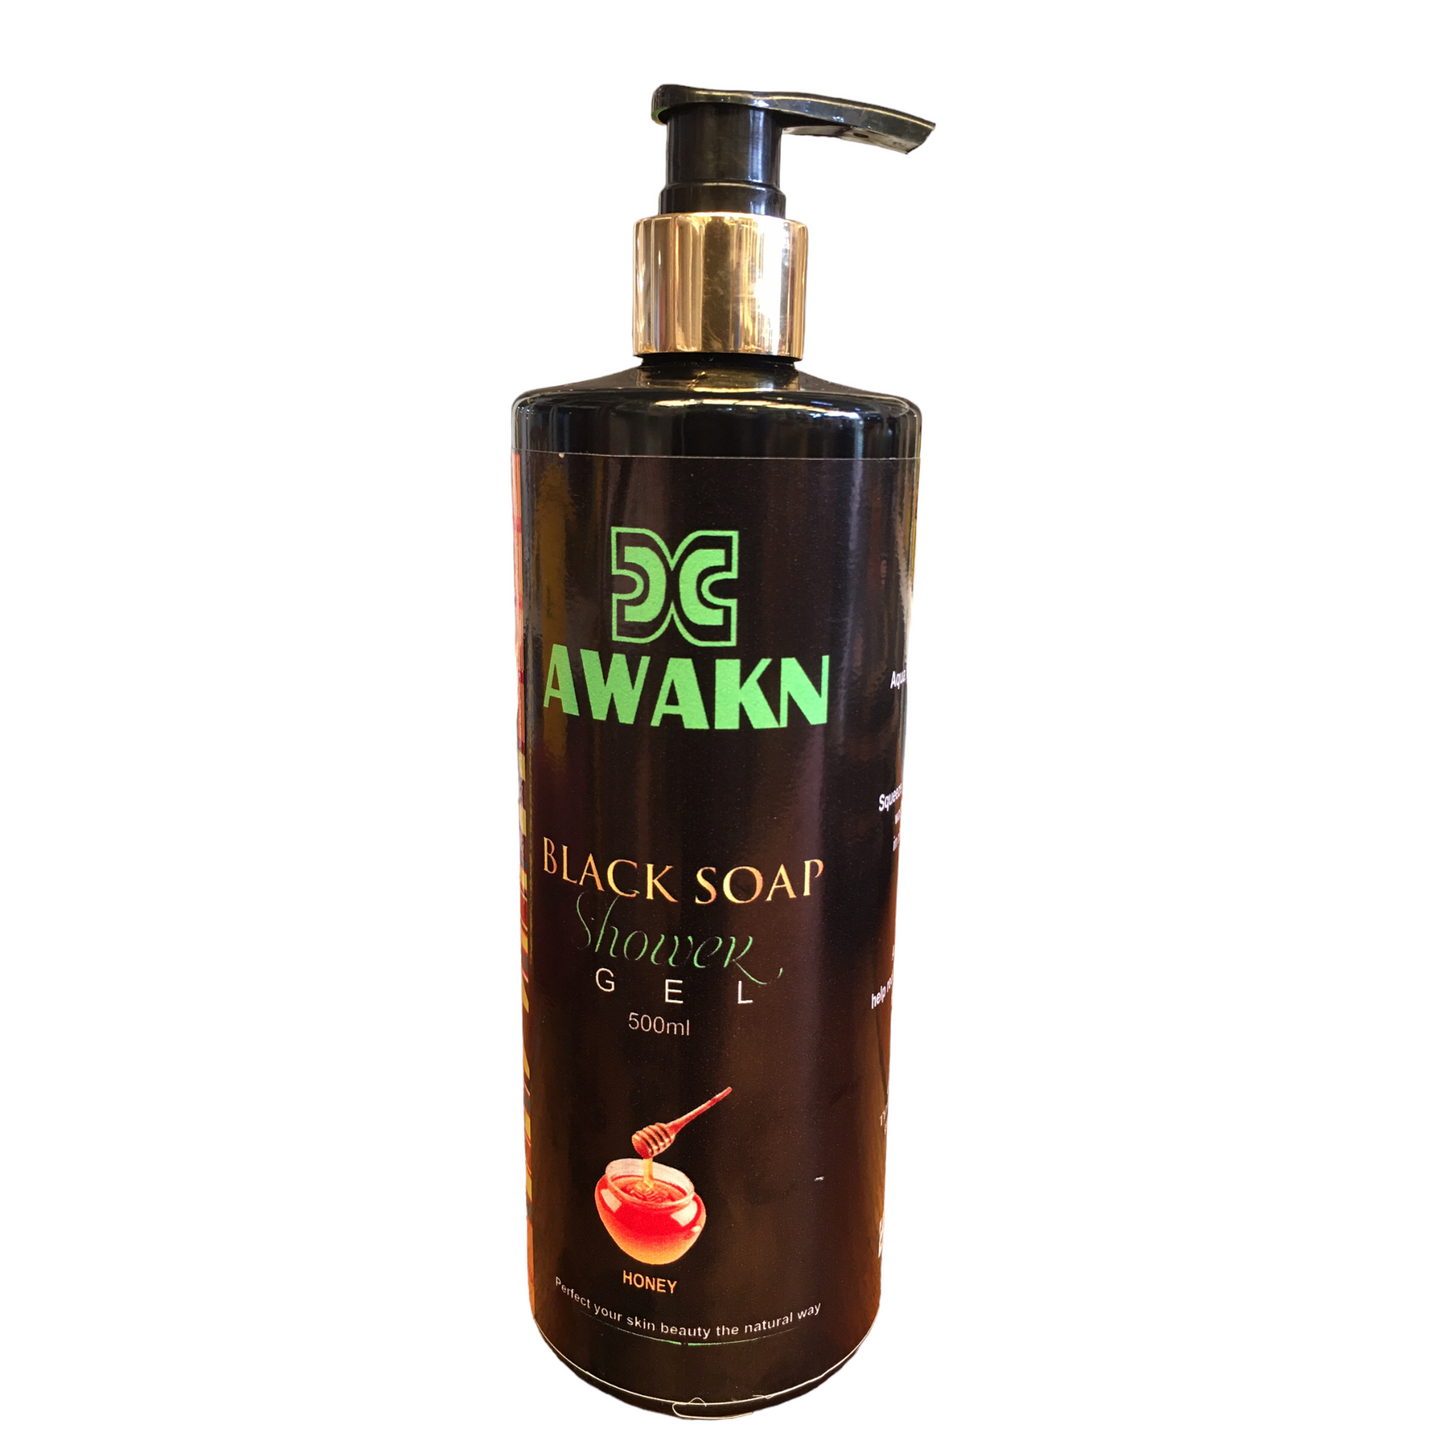 Awaken Black Soap Shower Gel